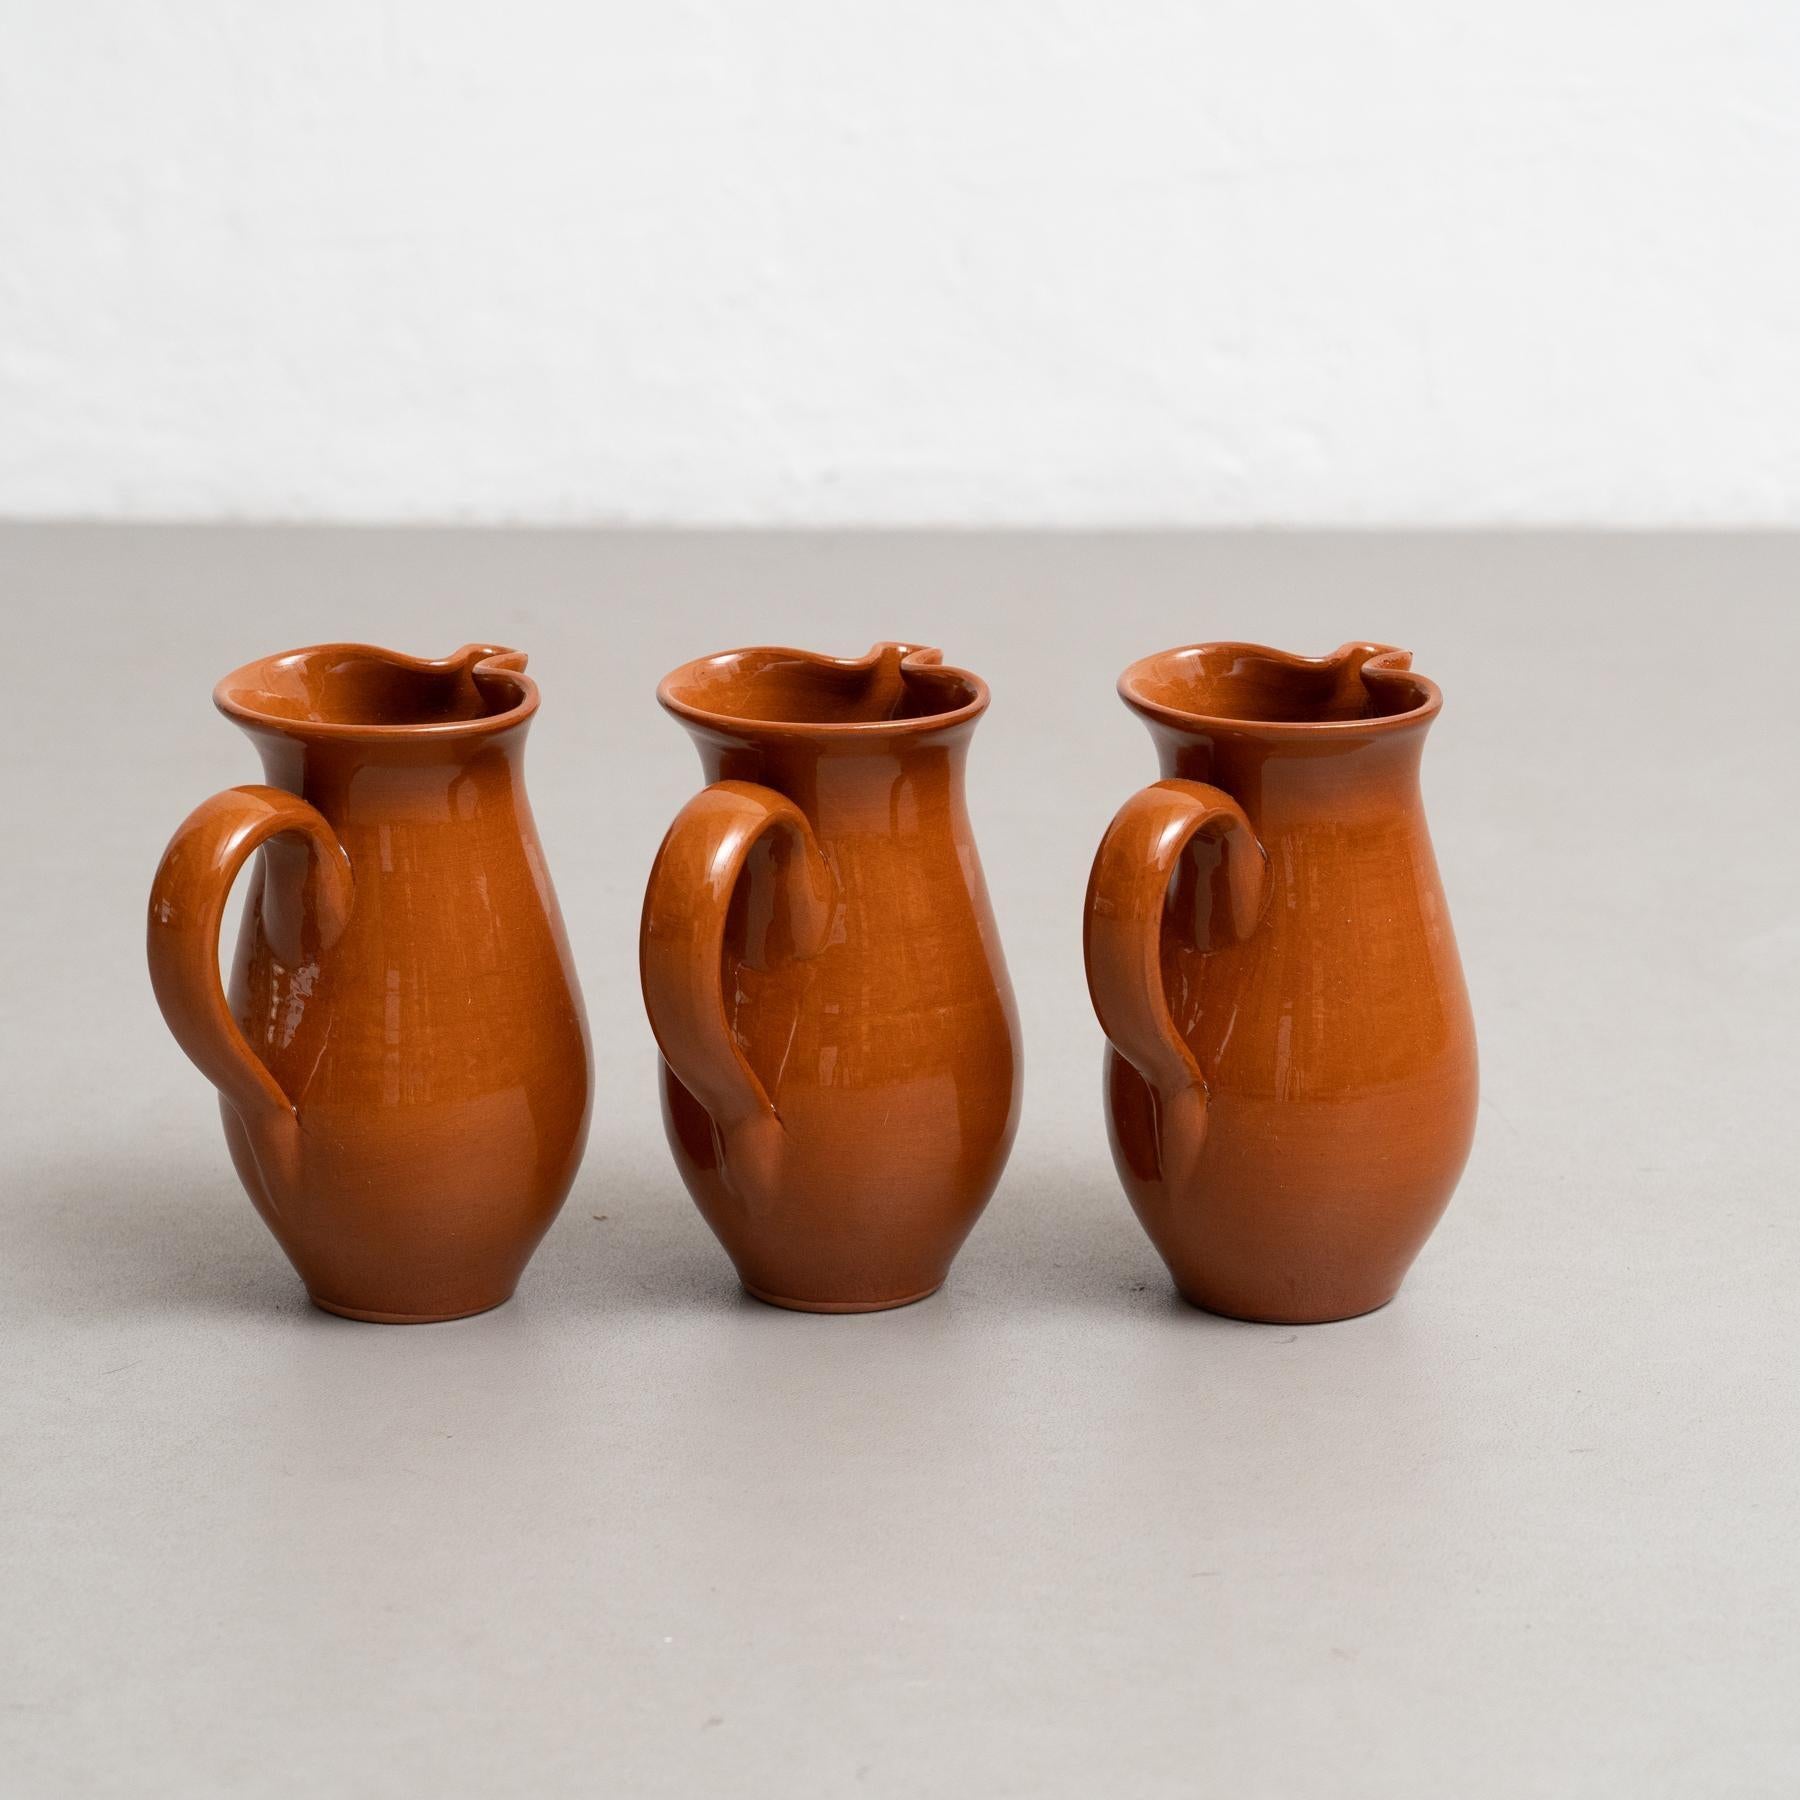 Ensemble de trois vases traditionnels en céramique espagnole du milieu du 20e siècle.

Fabriqué en Espagne.

En état d'origine avec une usure mineure conforme à l'âge et à l'utilisation, préservant une belle patine.

Matériaux :